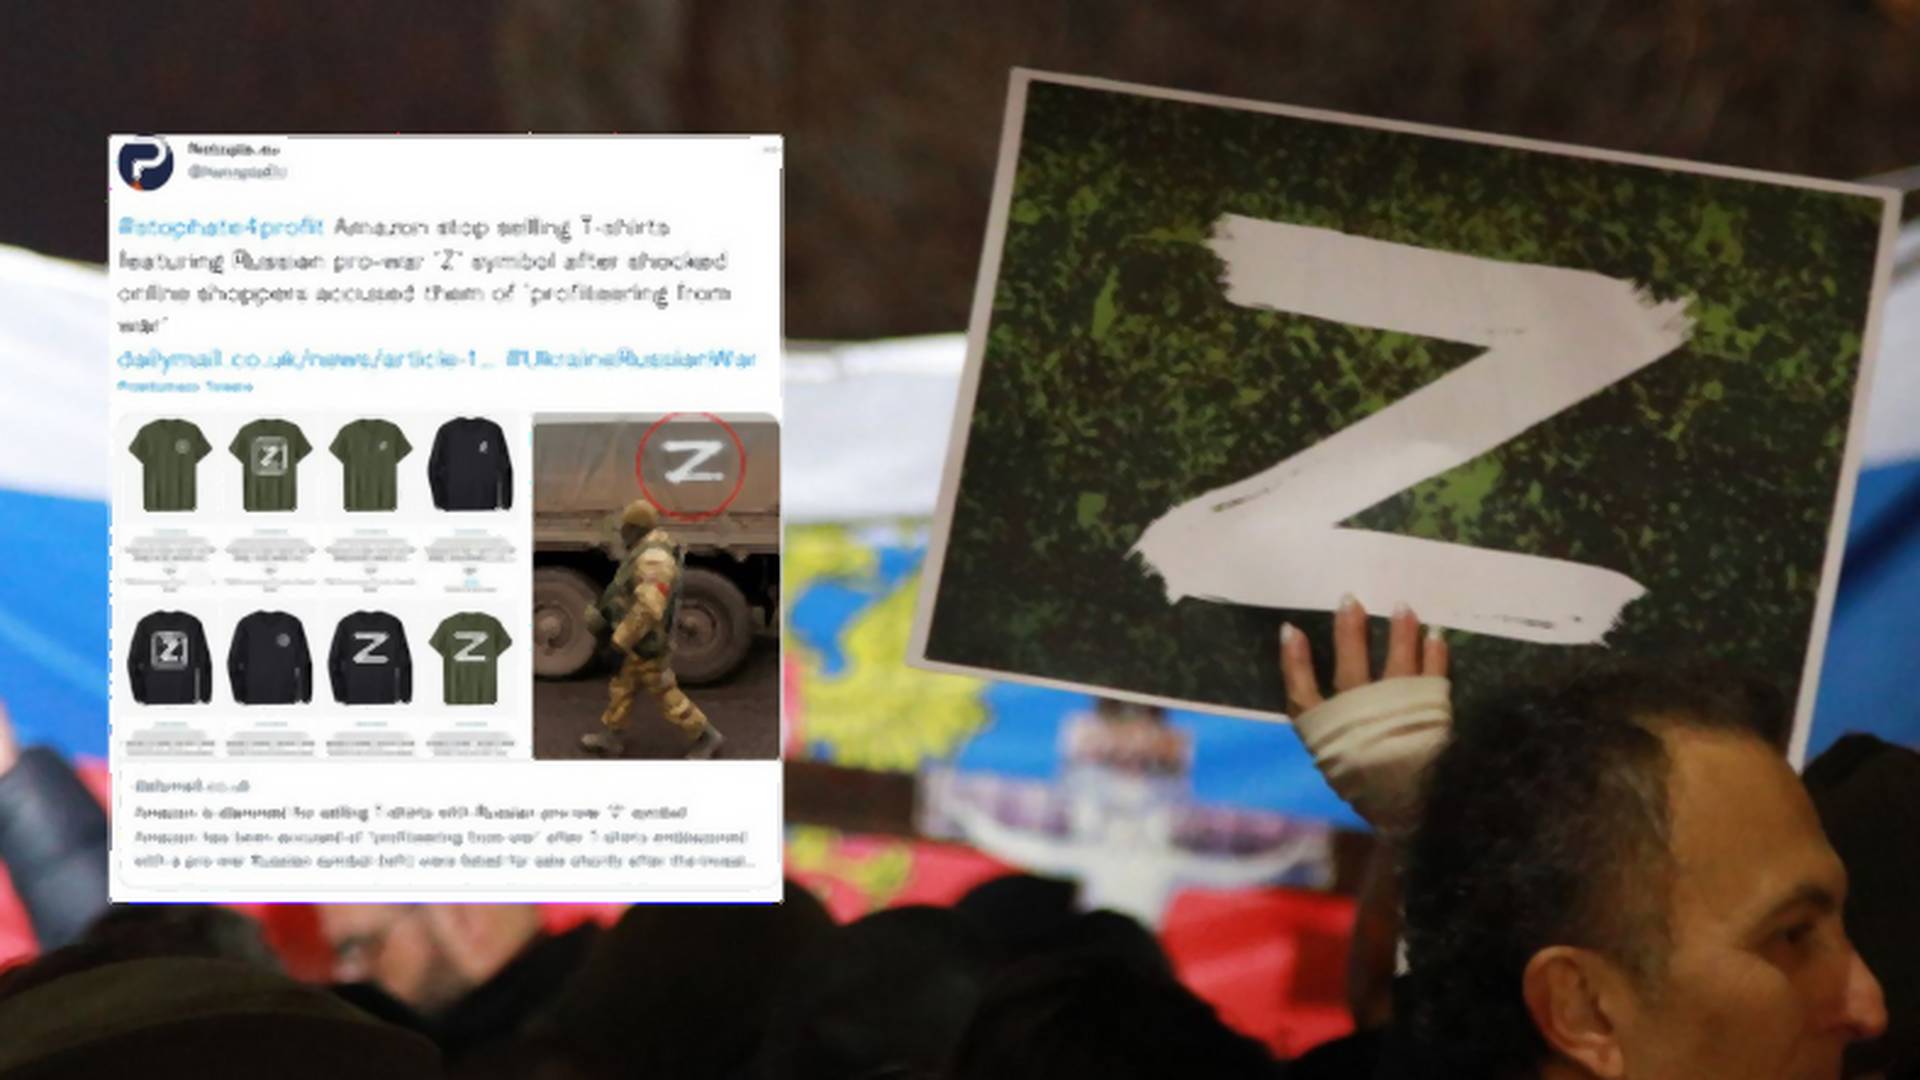 Amazon wycofuje ze sprzedaży koszulki z literą "Z". To symbol kojarzony z rosyjską agresją